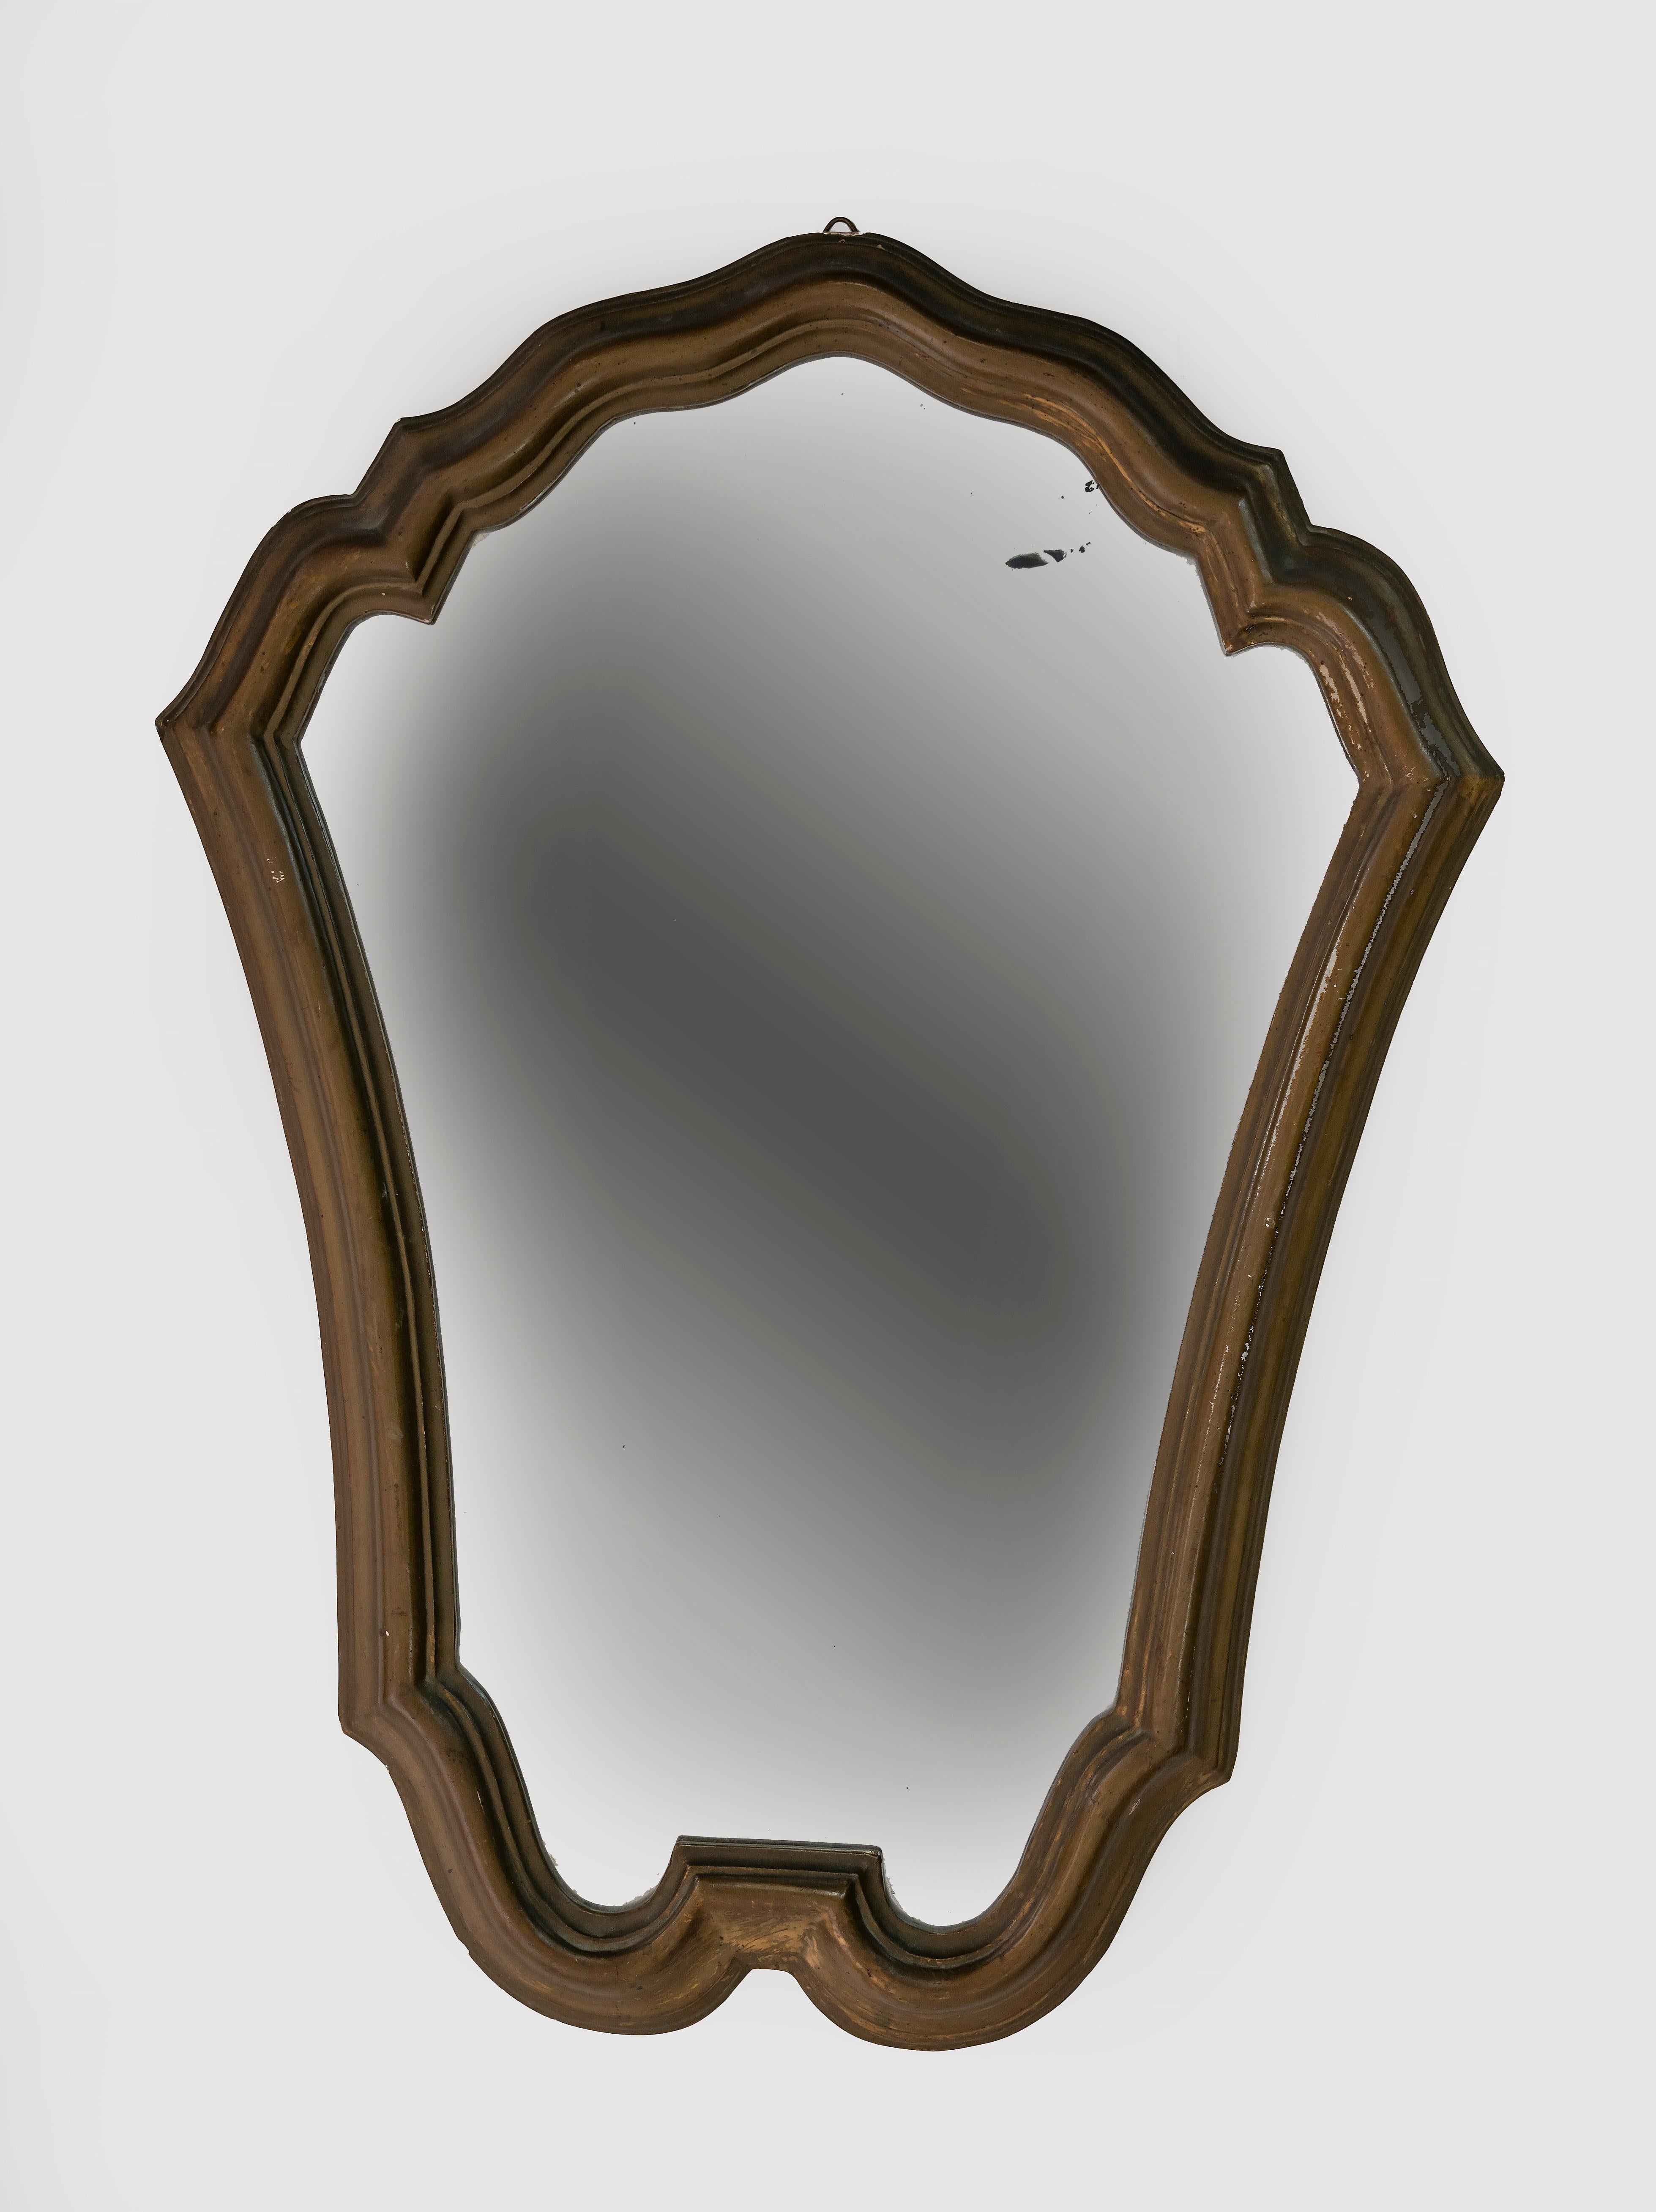 Vintage Mirror ist ein originelles Designobjekt, das Anfang des 20. Jahrhunderts in Italien hergestellt wurde.

Guter Zustand mit Ausnahme einiger kleinerer Verluste des Holzes und Flecken auf dem Spiegelglas.

Verleihen Sie Ihrem Zimmer einen